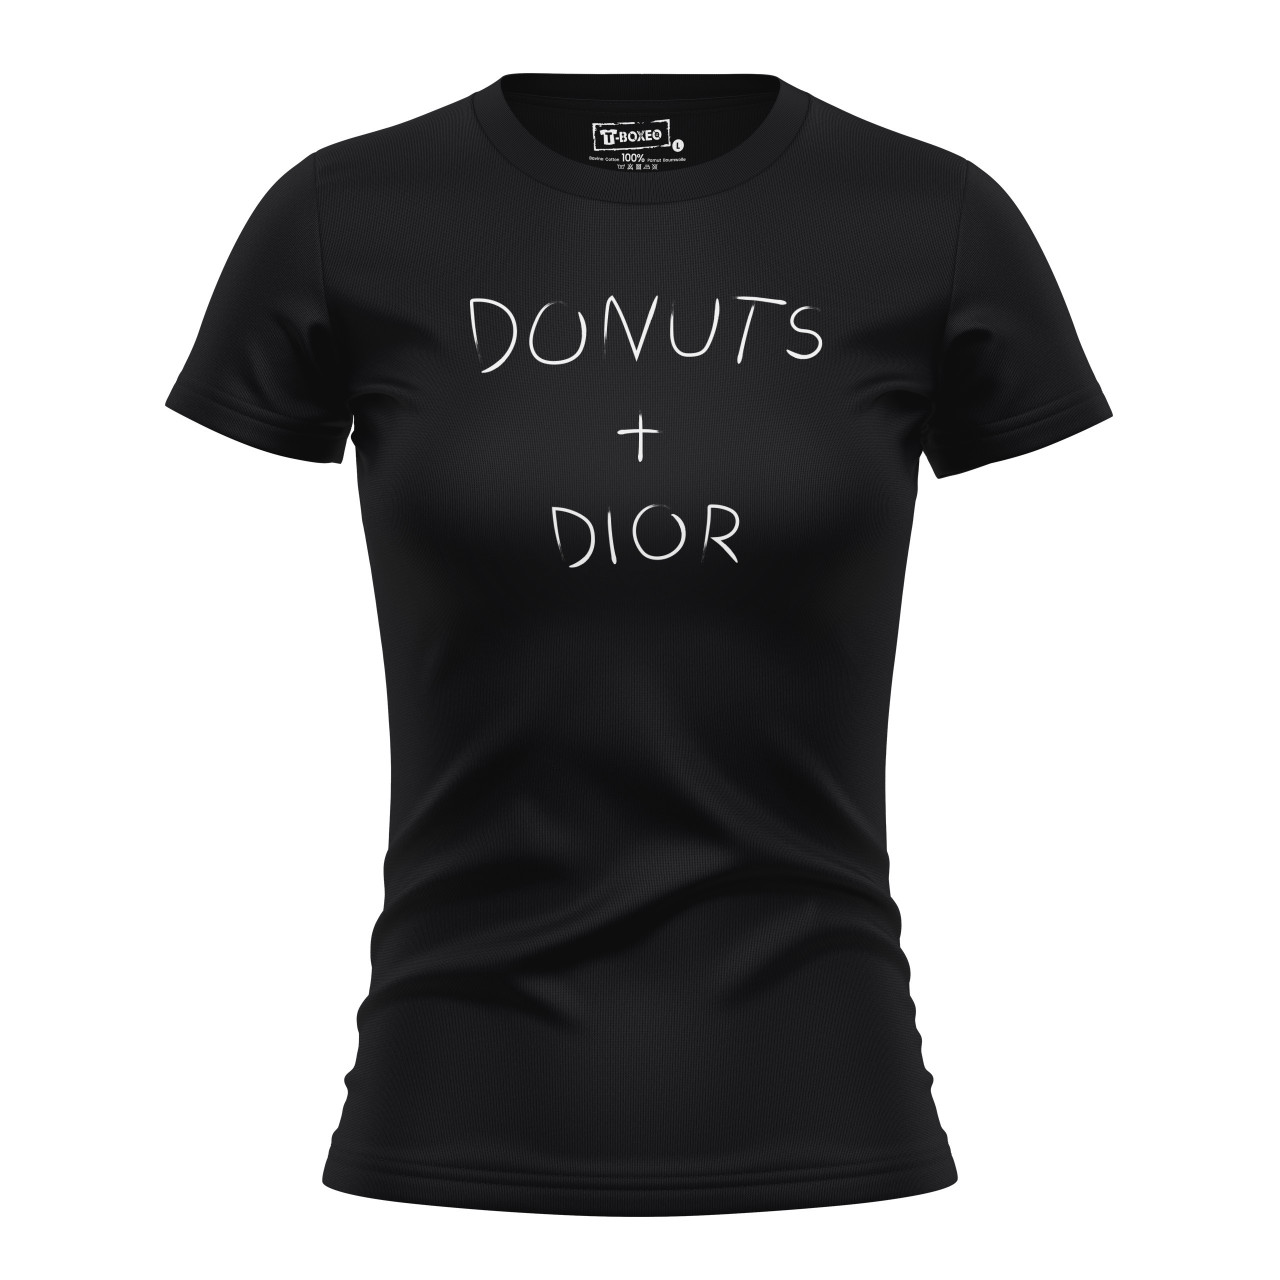 Dámské tričko s potiskem “Donuts + Dior”